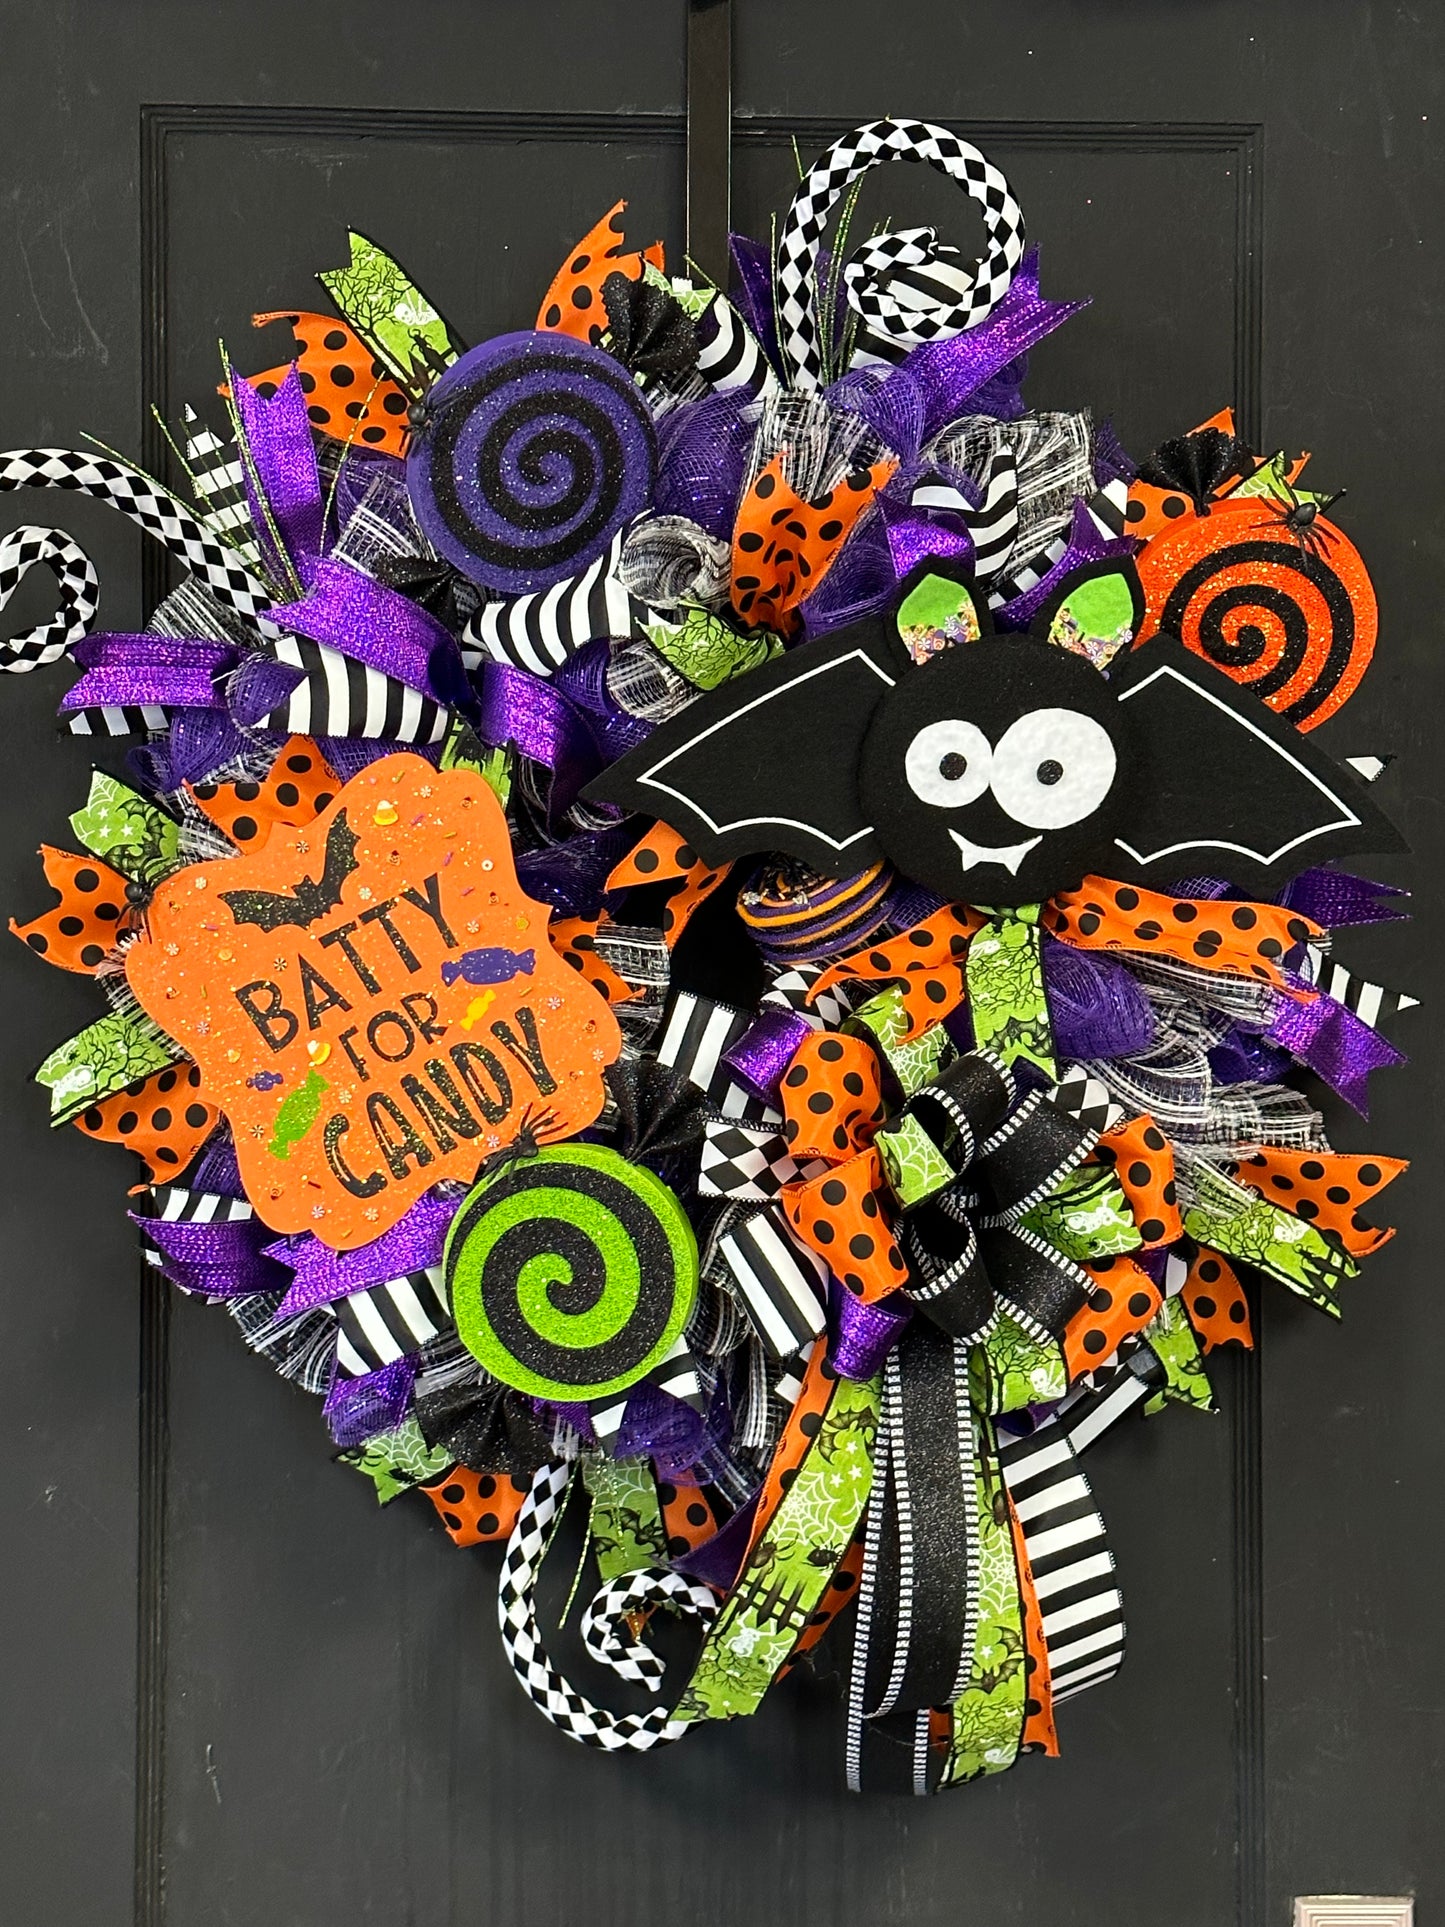 Wreath Kit - Batty for Candy Halloween DIY Wreath Kit